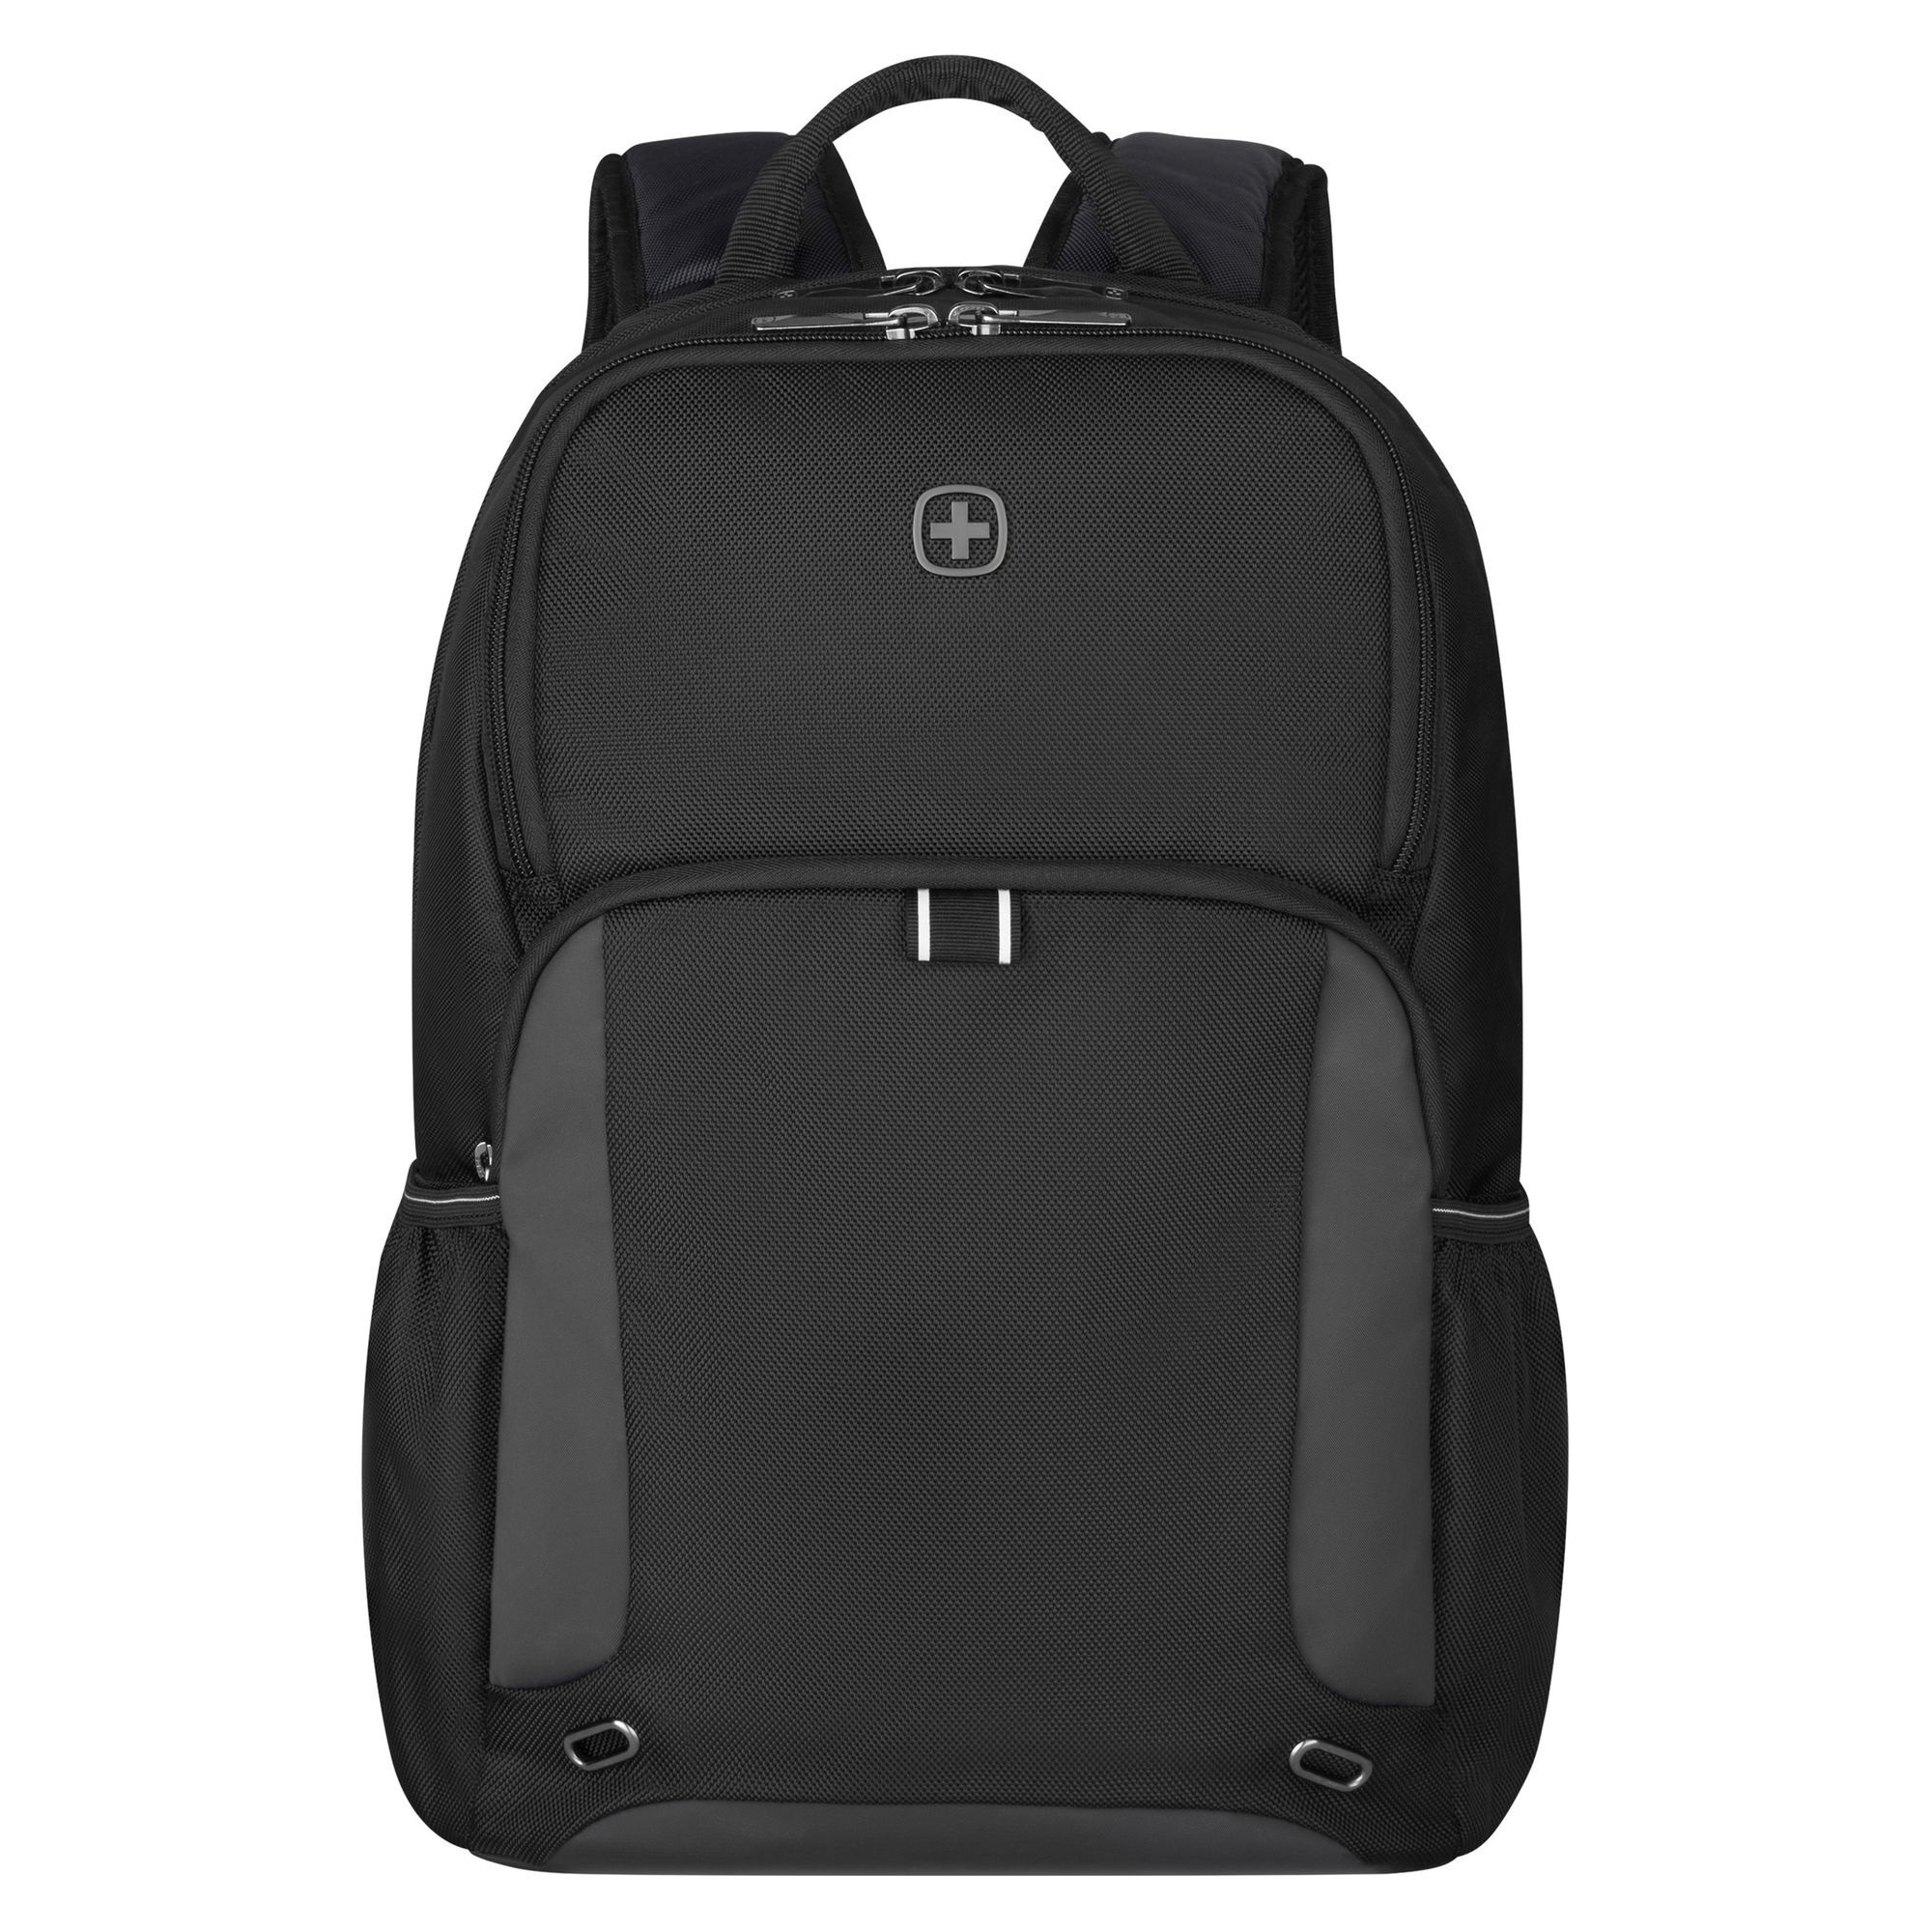 Рюкзак Wenger XE Tryal 44 cm Laptopfach, черный рюкзак wenger reload 14 42 cm laptopfach черный